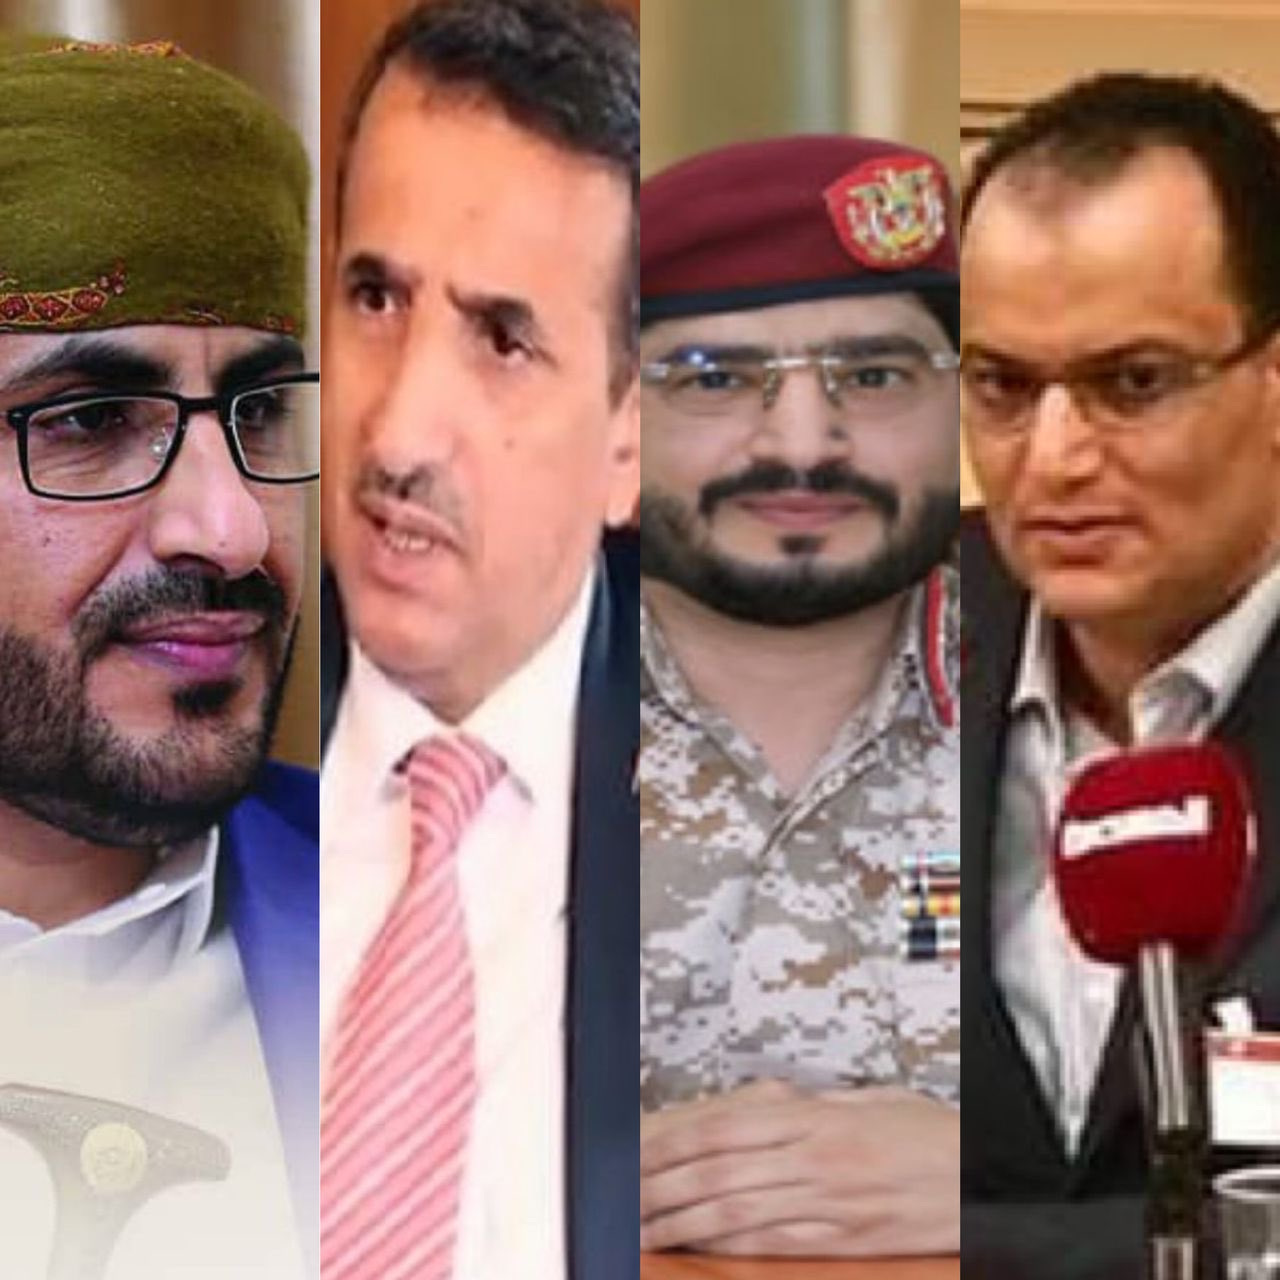 مراقبون: الوفد الحوثي في الرياض يعكس سلالية الجماعة وعنصريتها